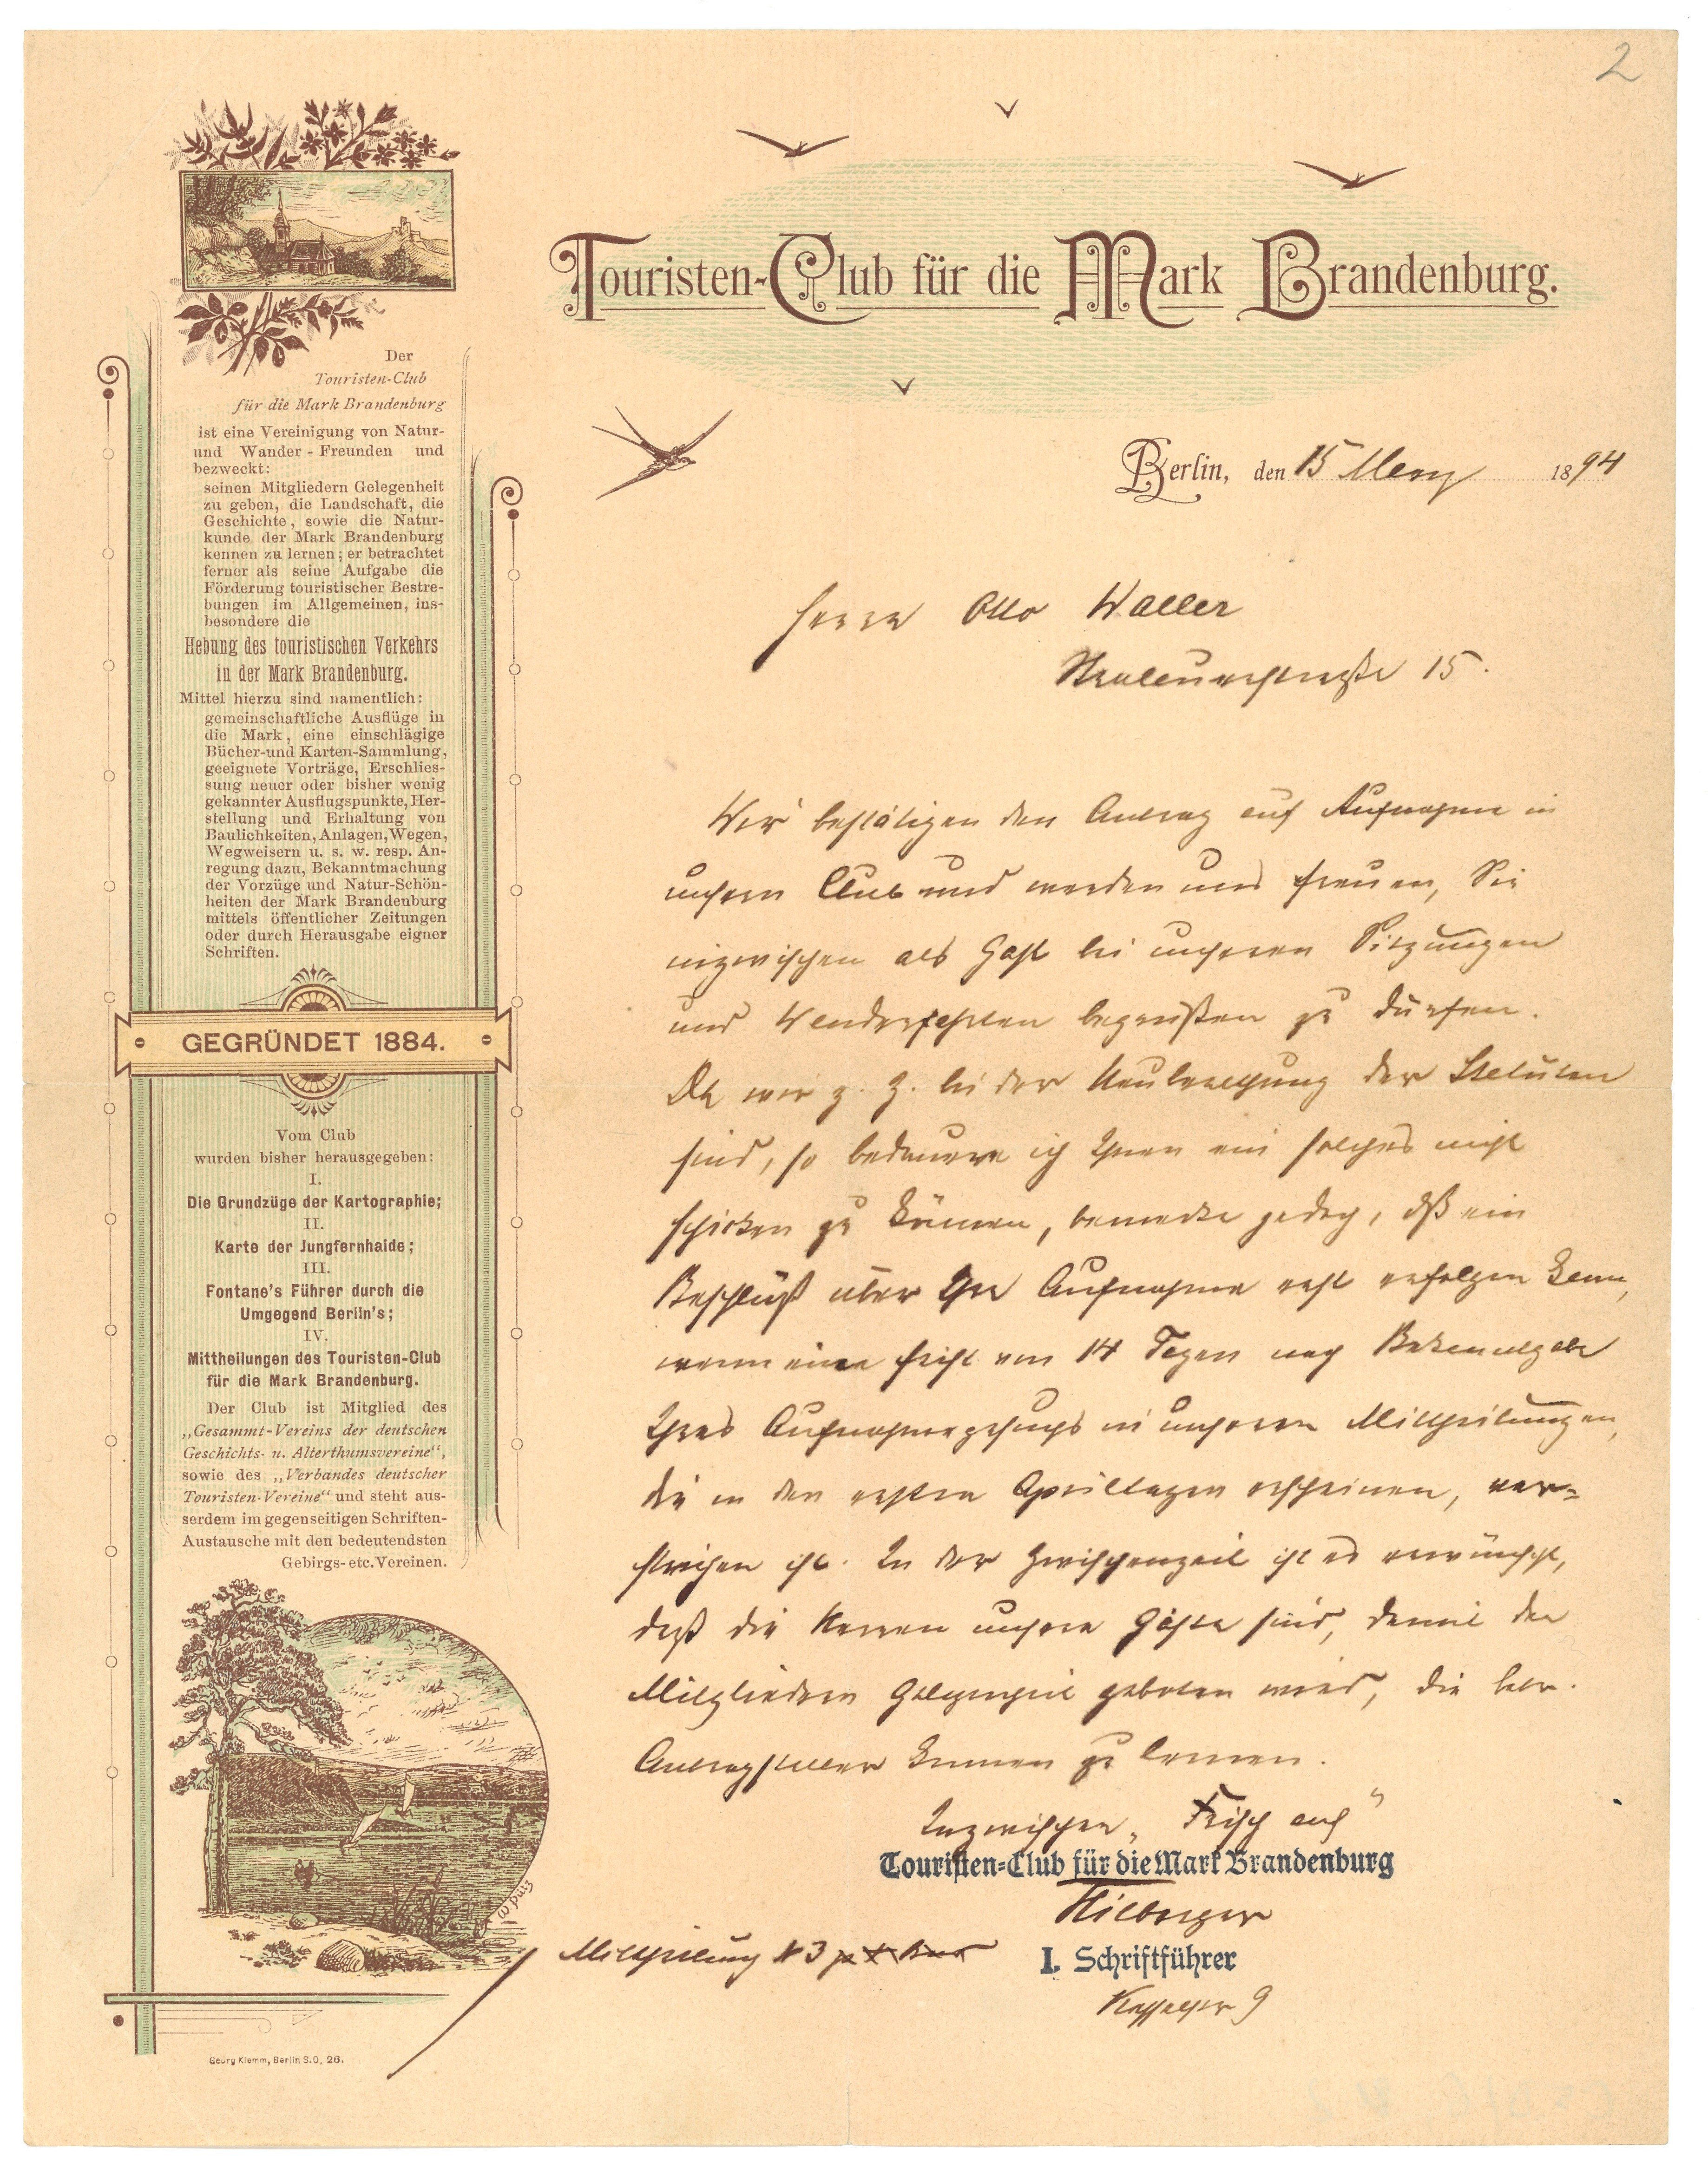 Schreiben des Touristen-Clubs für die Mark Brandenburg an Otto Waller 1894 (Landesgeschichtliche Vereinigung für die Mark Brandenburg e.V., Archiv CC BY)